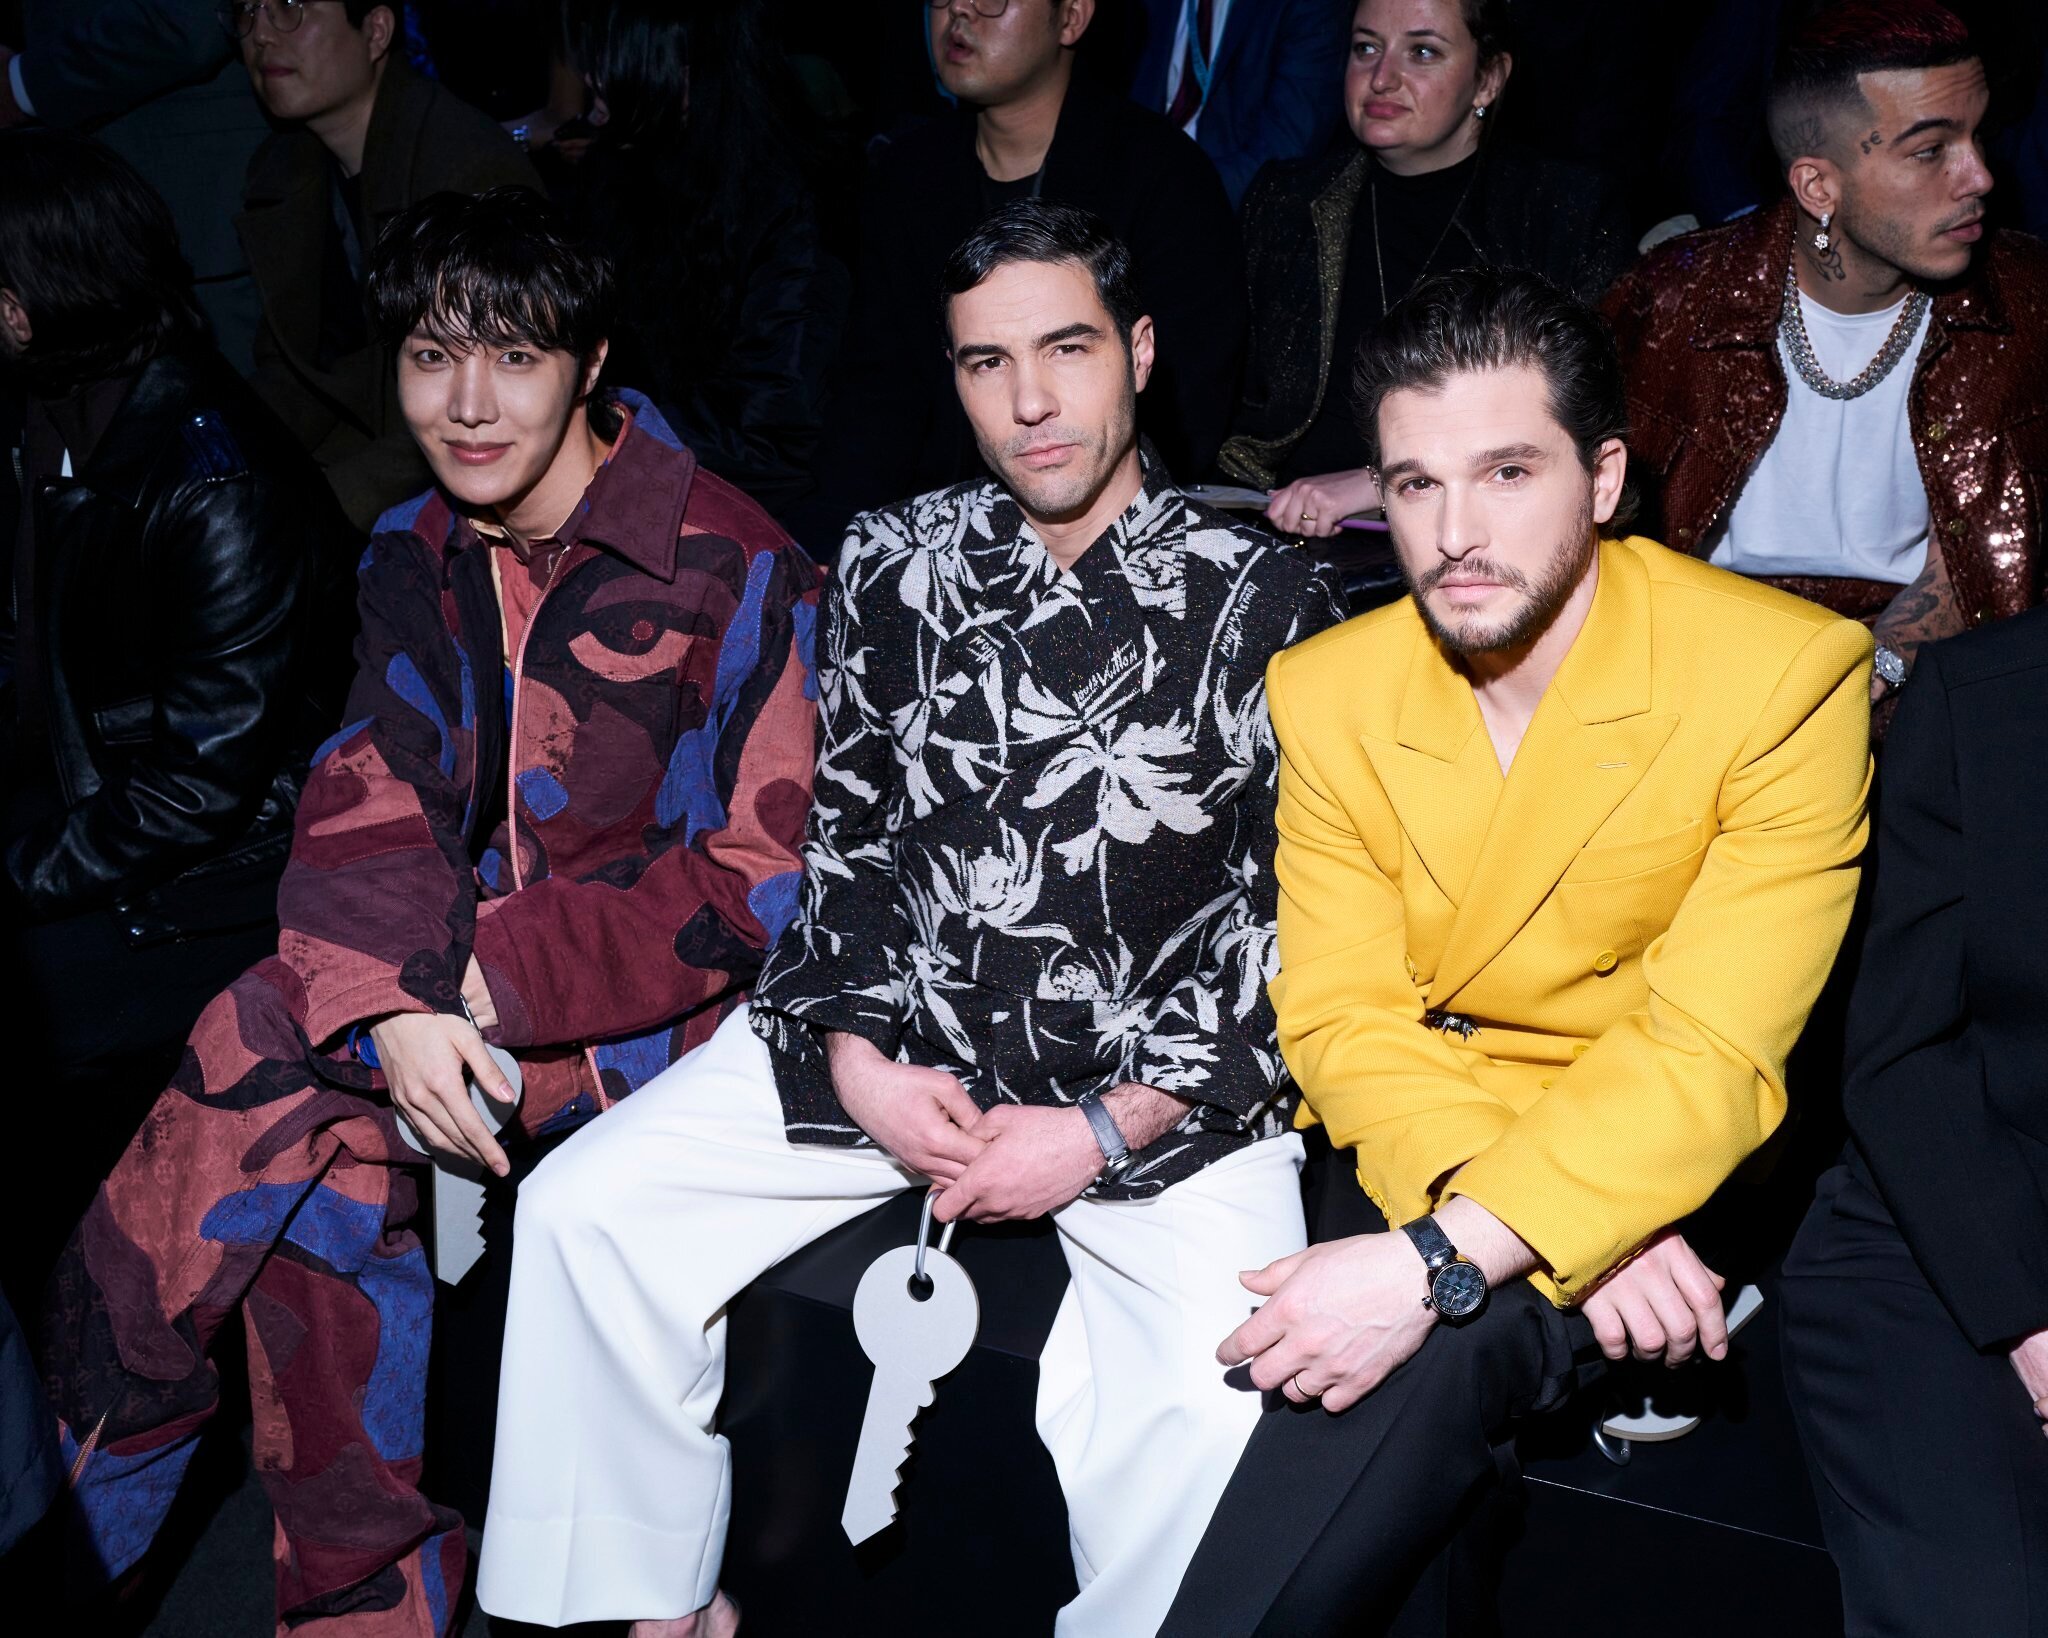 BTS J-Hope to attend Louis Vuitton 2023 fashion show in Paris